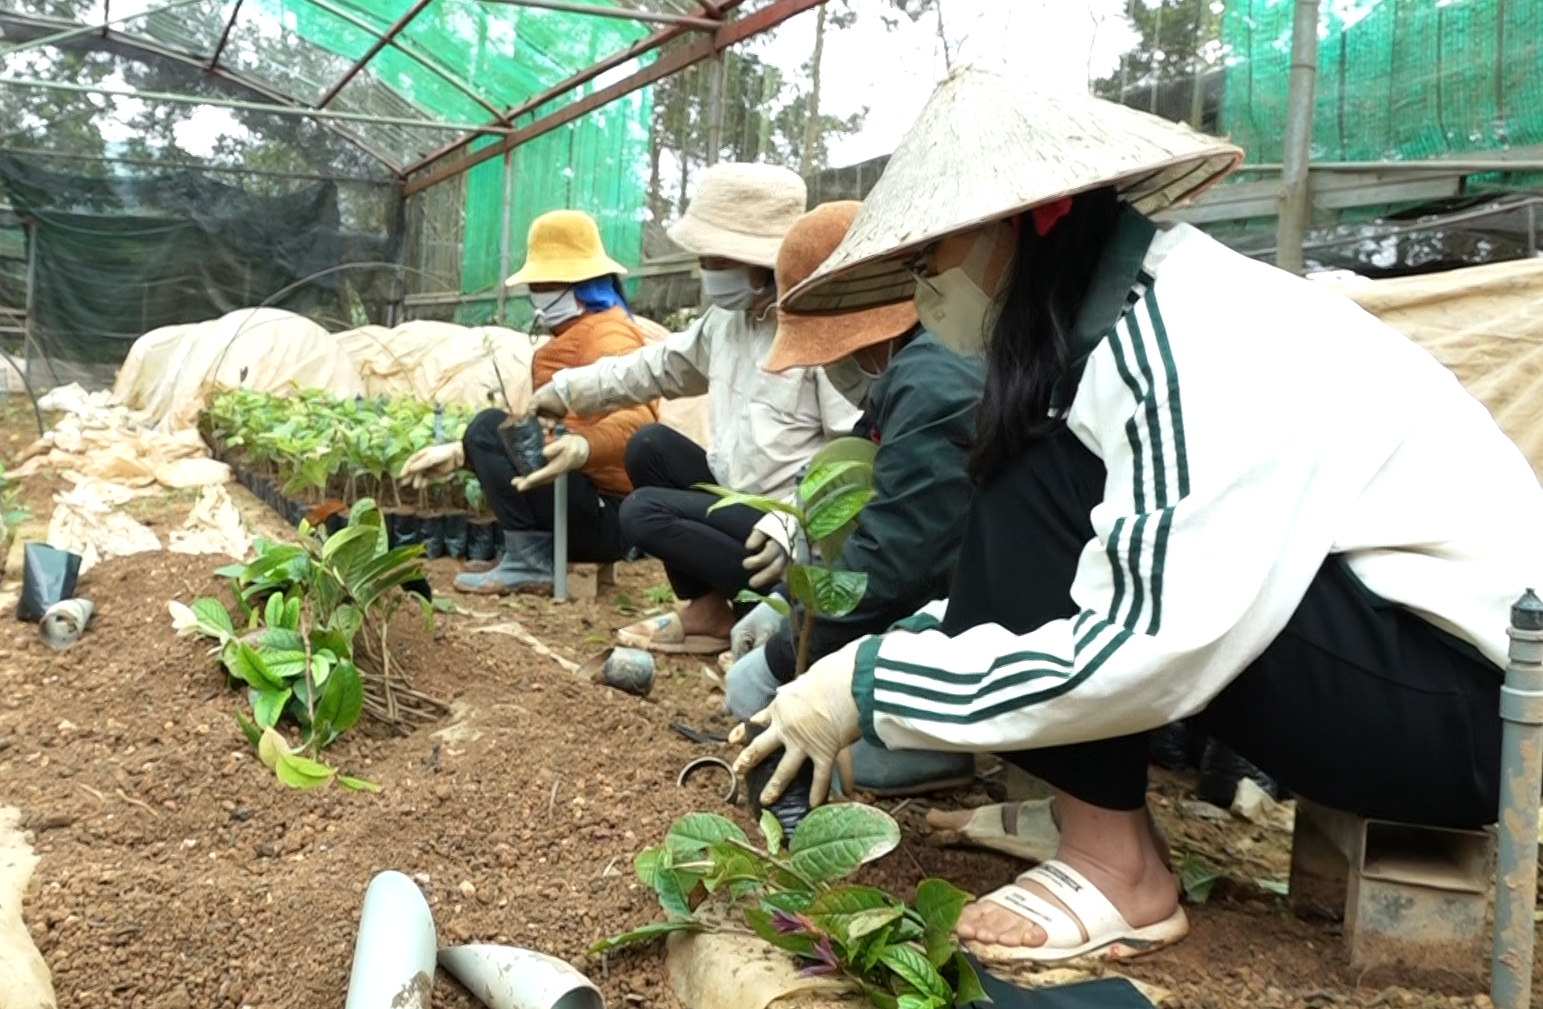 Cây trà hoa vàng mang lại nguồn thu cũng như công việc ổn định cho người dân. Ảnh: Nguyễn Thành.